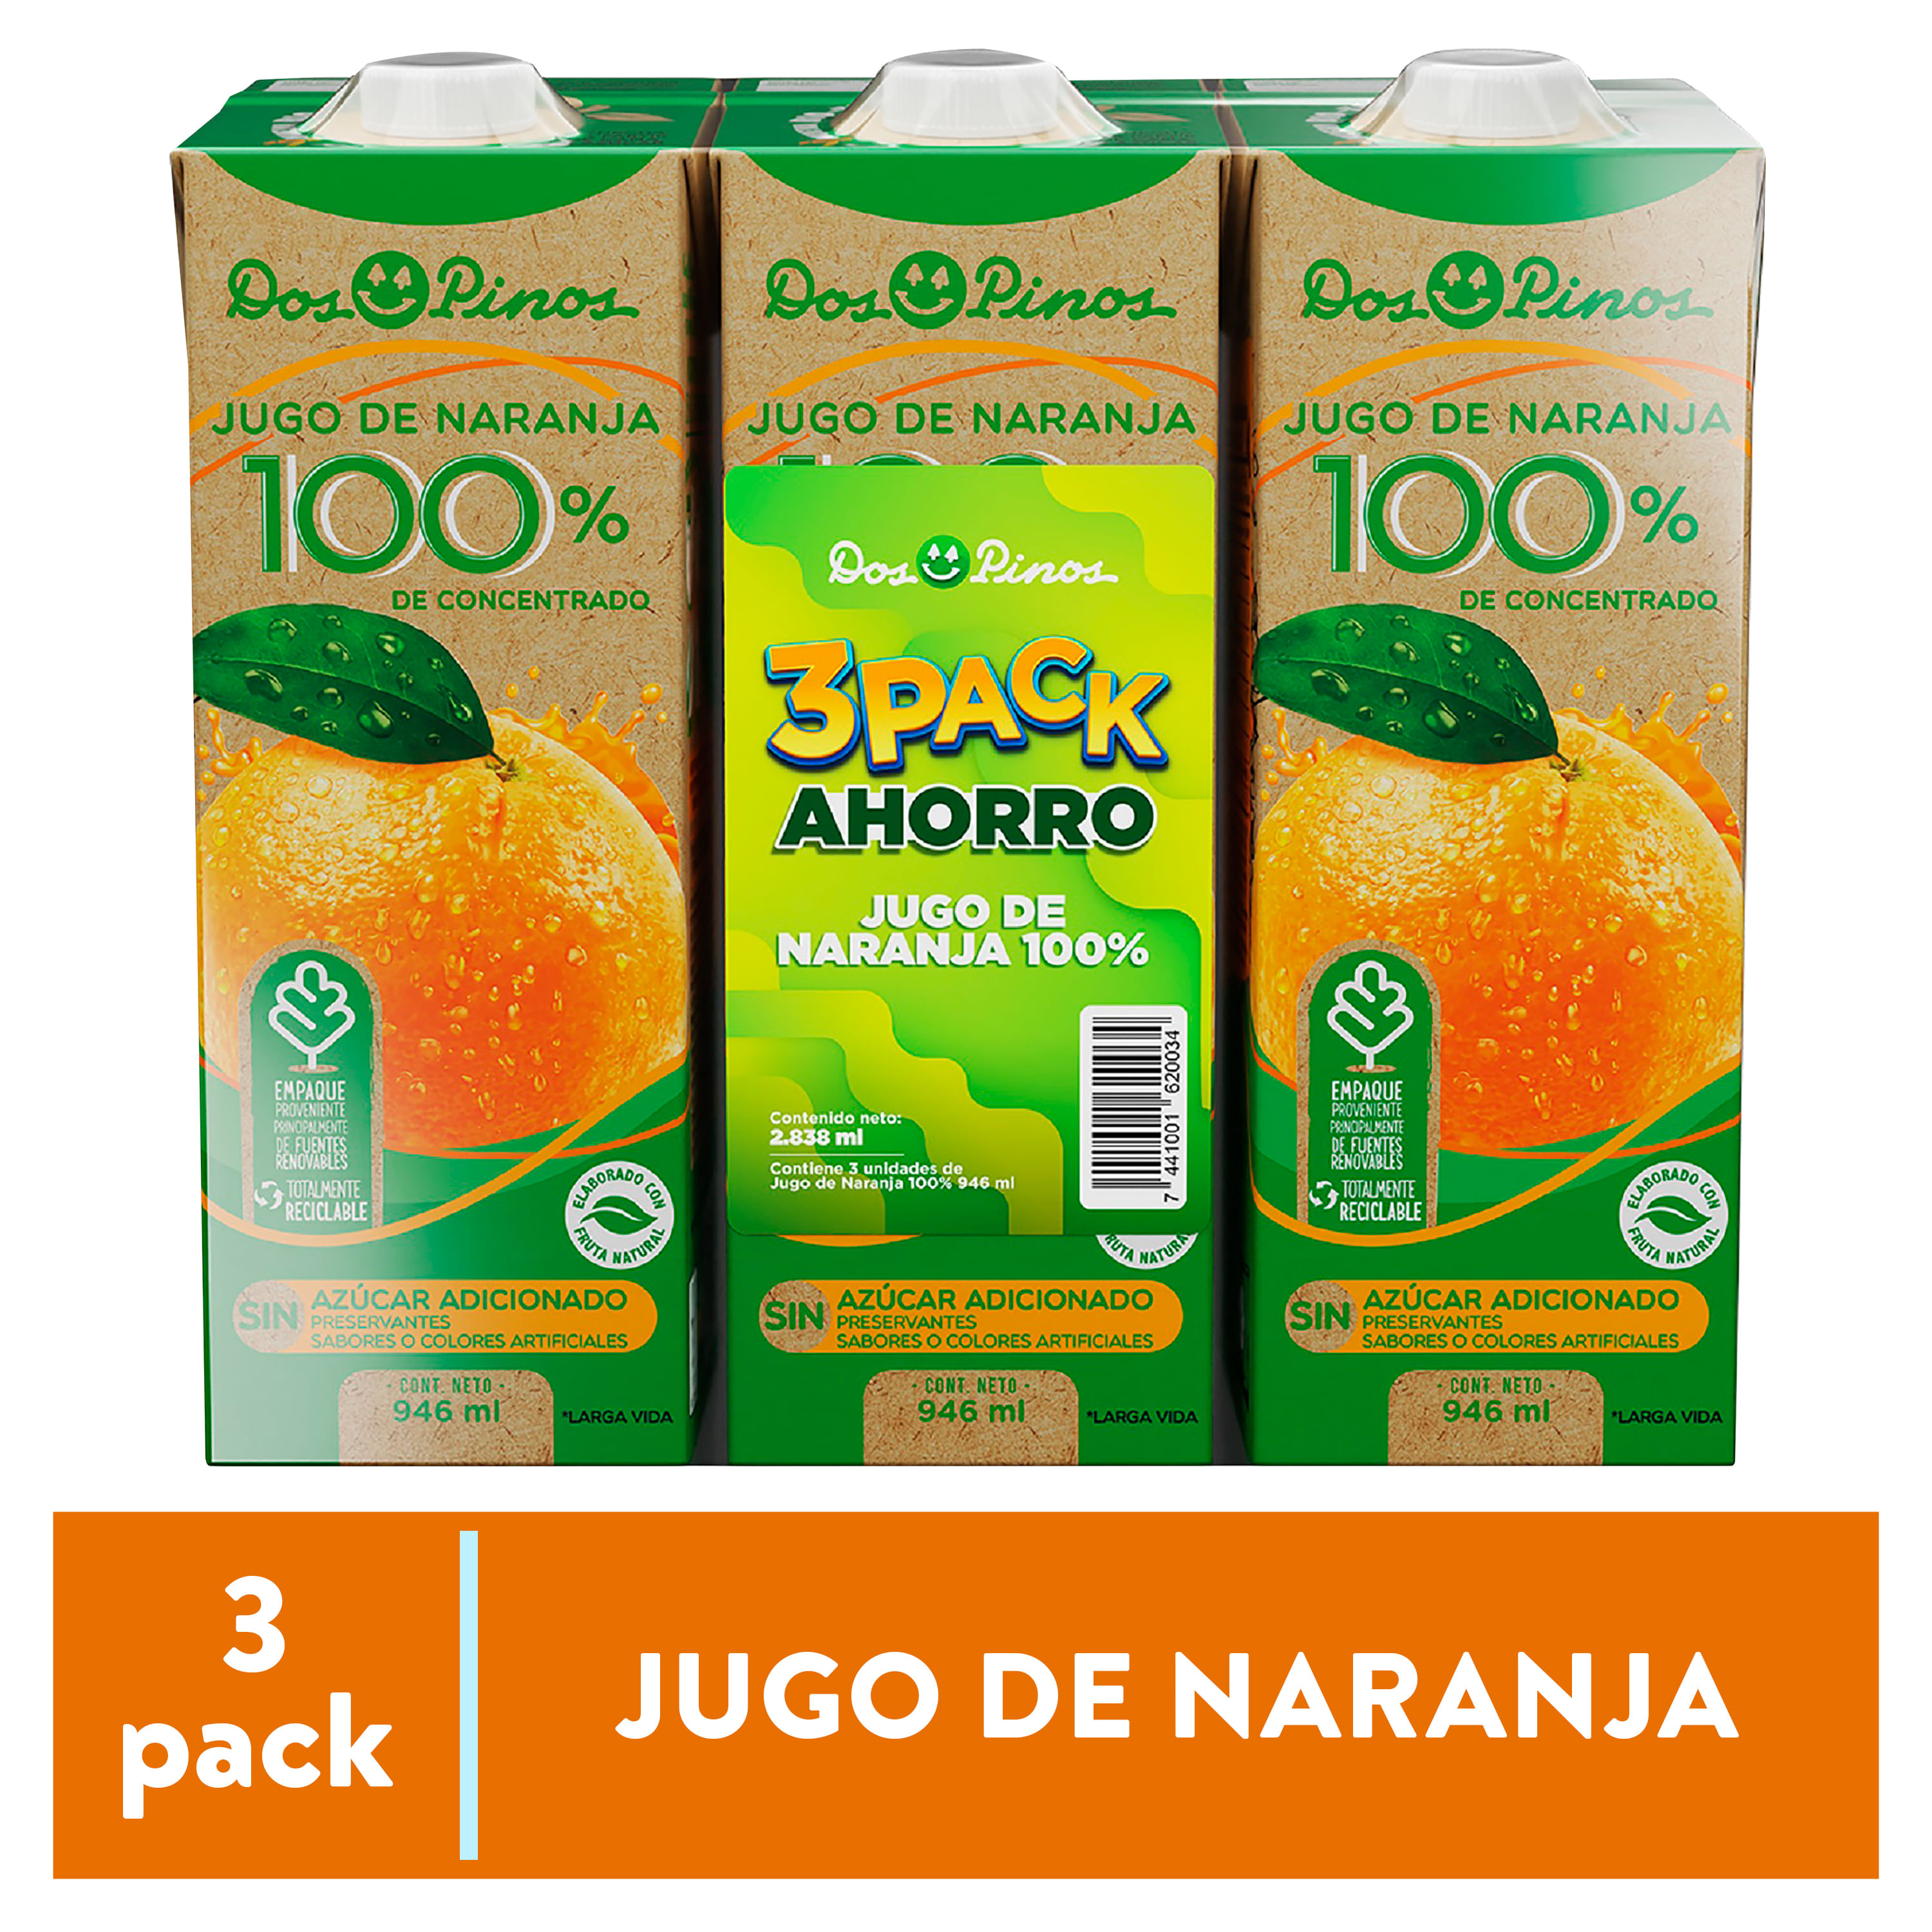 Jugo-Naranja-Dos-Pinos-100-De-Concentrado-3-Pack-946-ml-1-33079